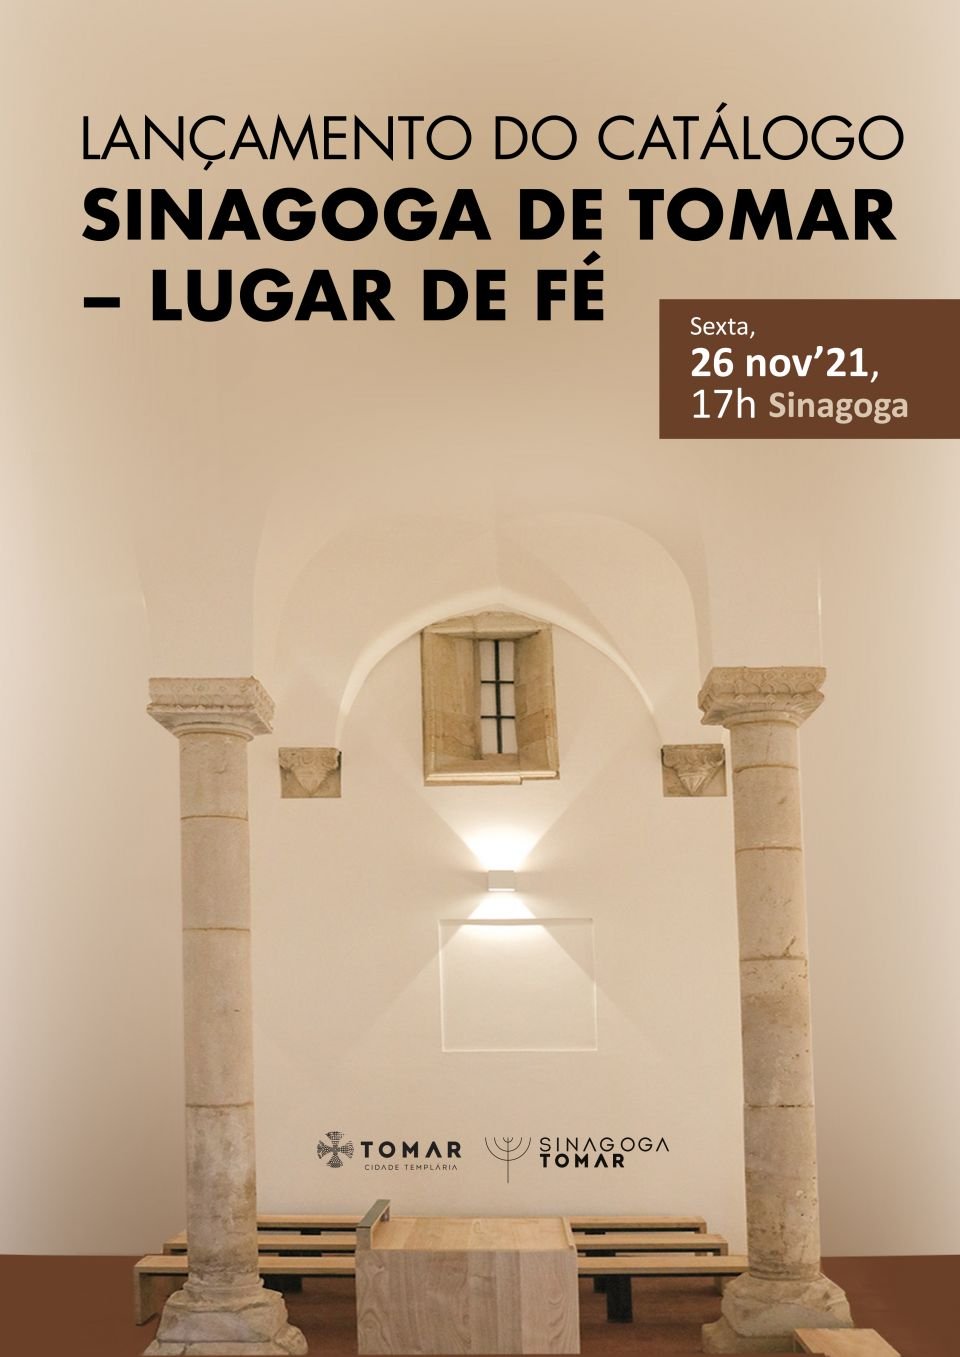 Lançamento do catálogo “Sinagoga de Tomar – Lugar de Fé”